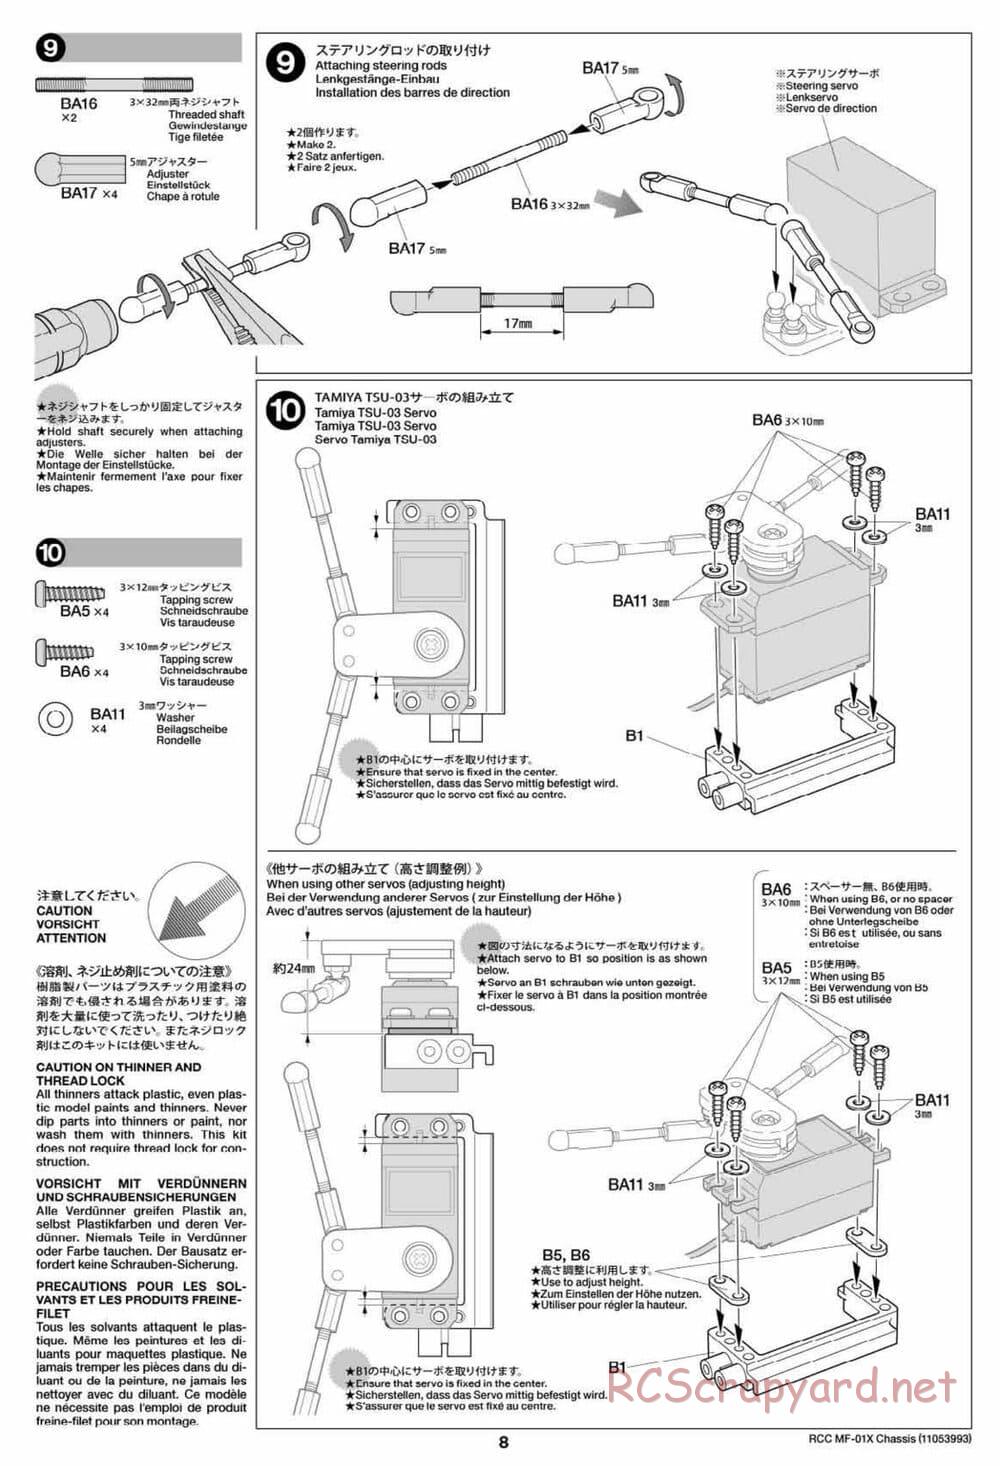 Tamiya - MF-01X Chassis - Manual - Page 8